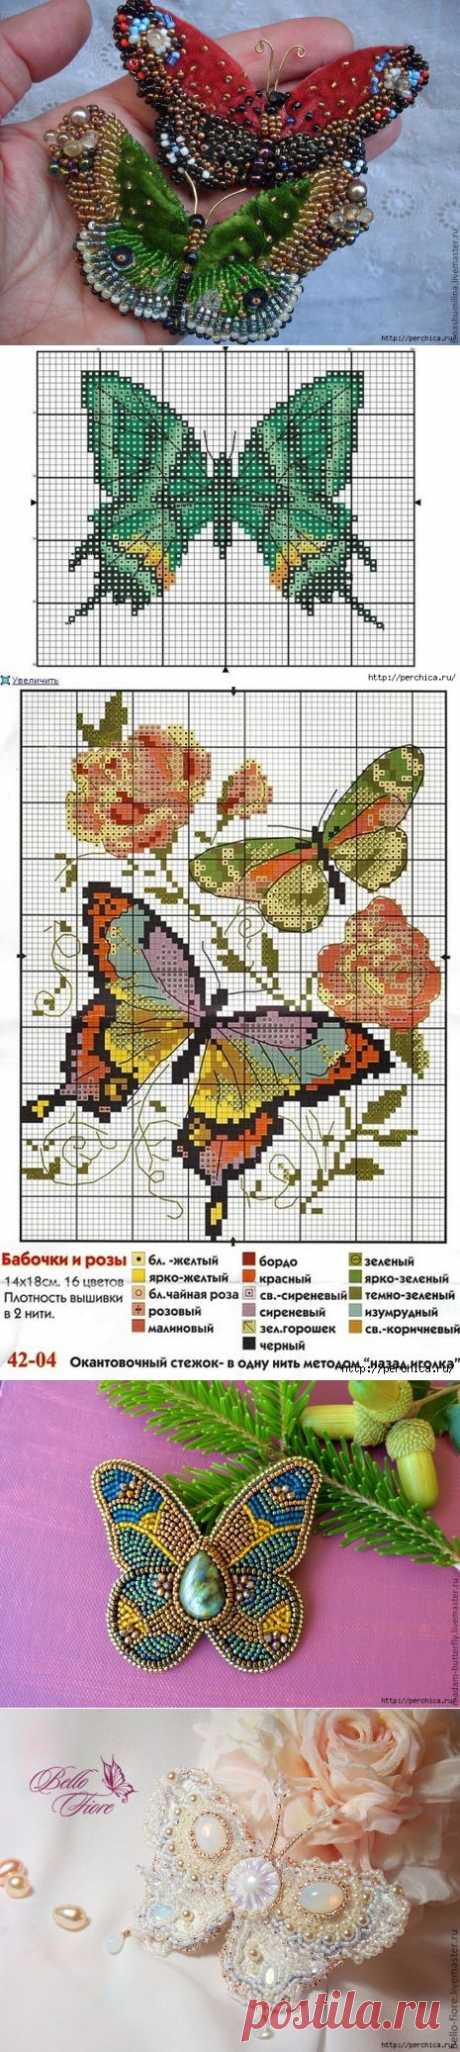 Схемы для вышивки бабочек бисером